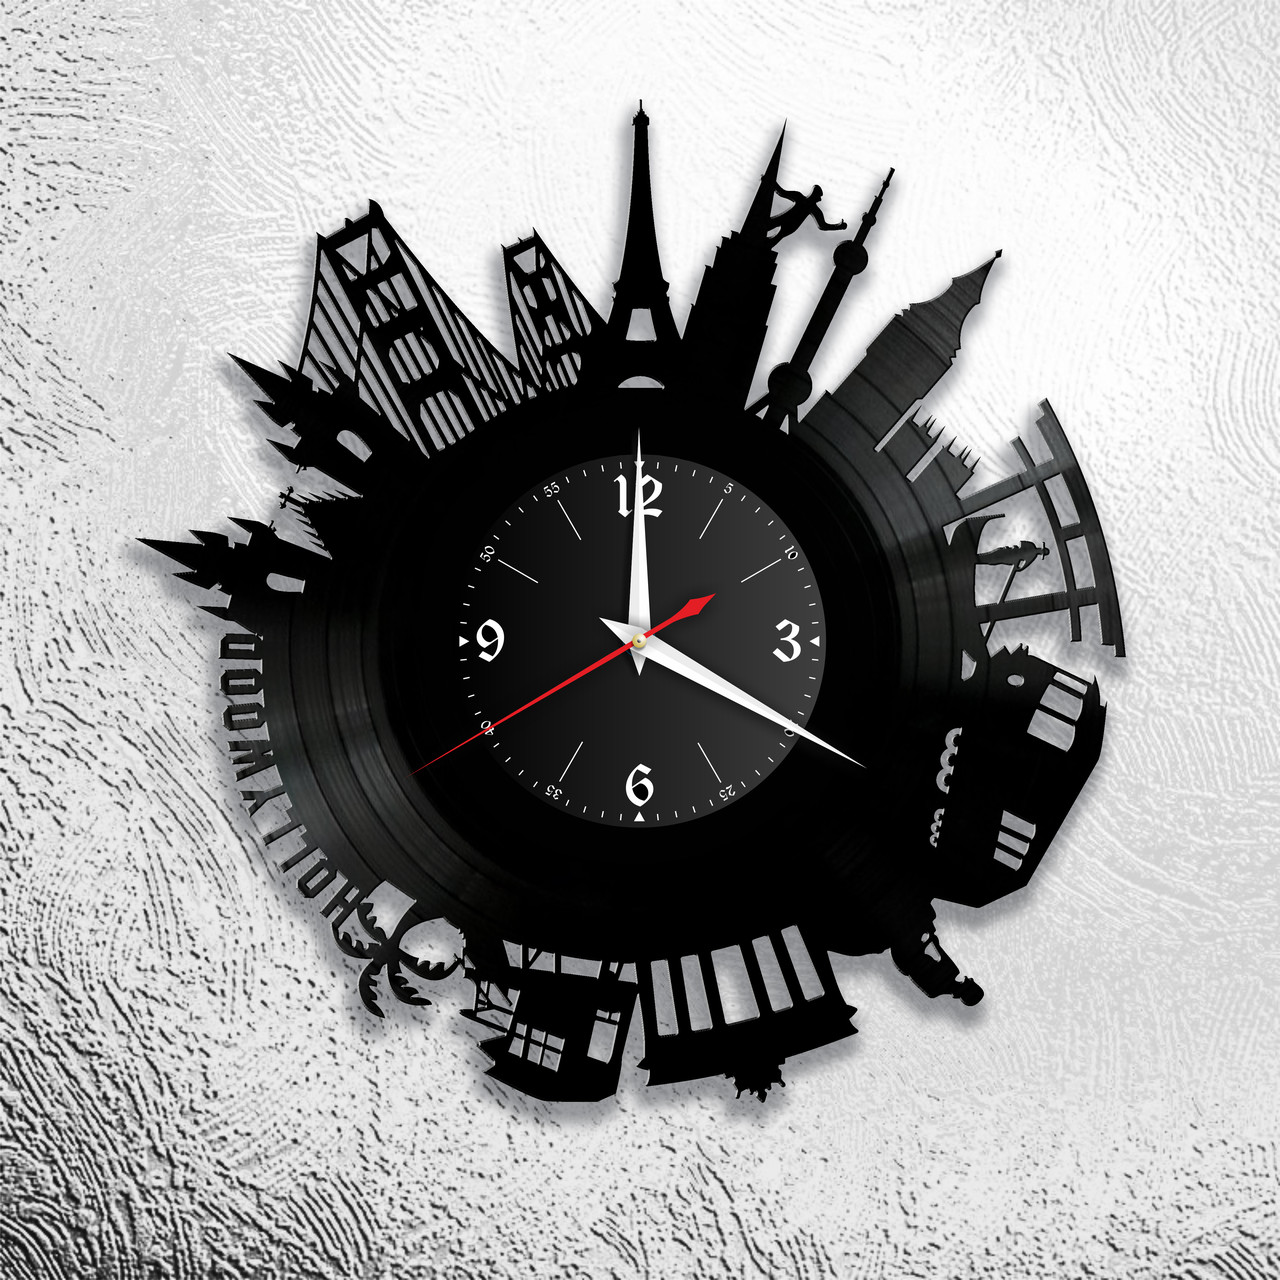 Оригинальные часы из виниловых пластинок  "Голивуд" версия 1, фото 1